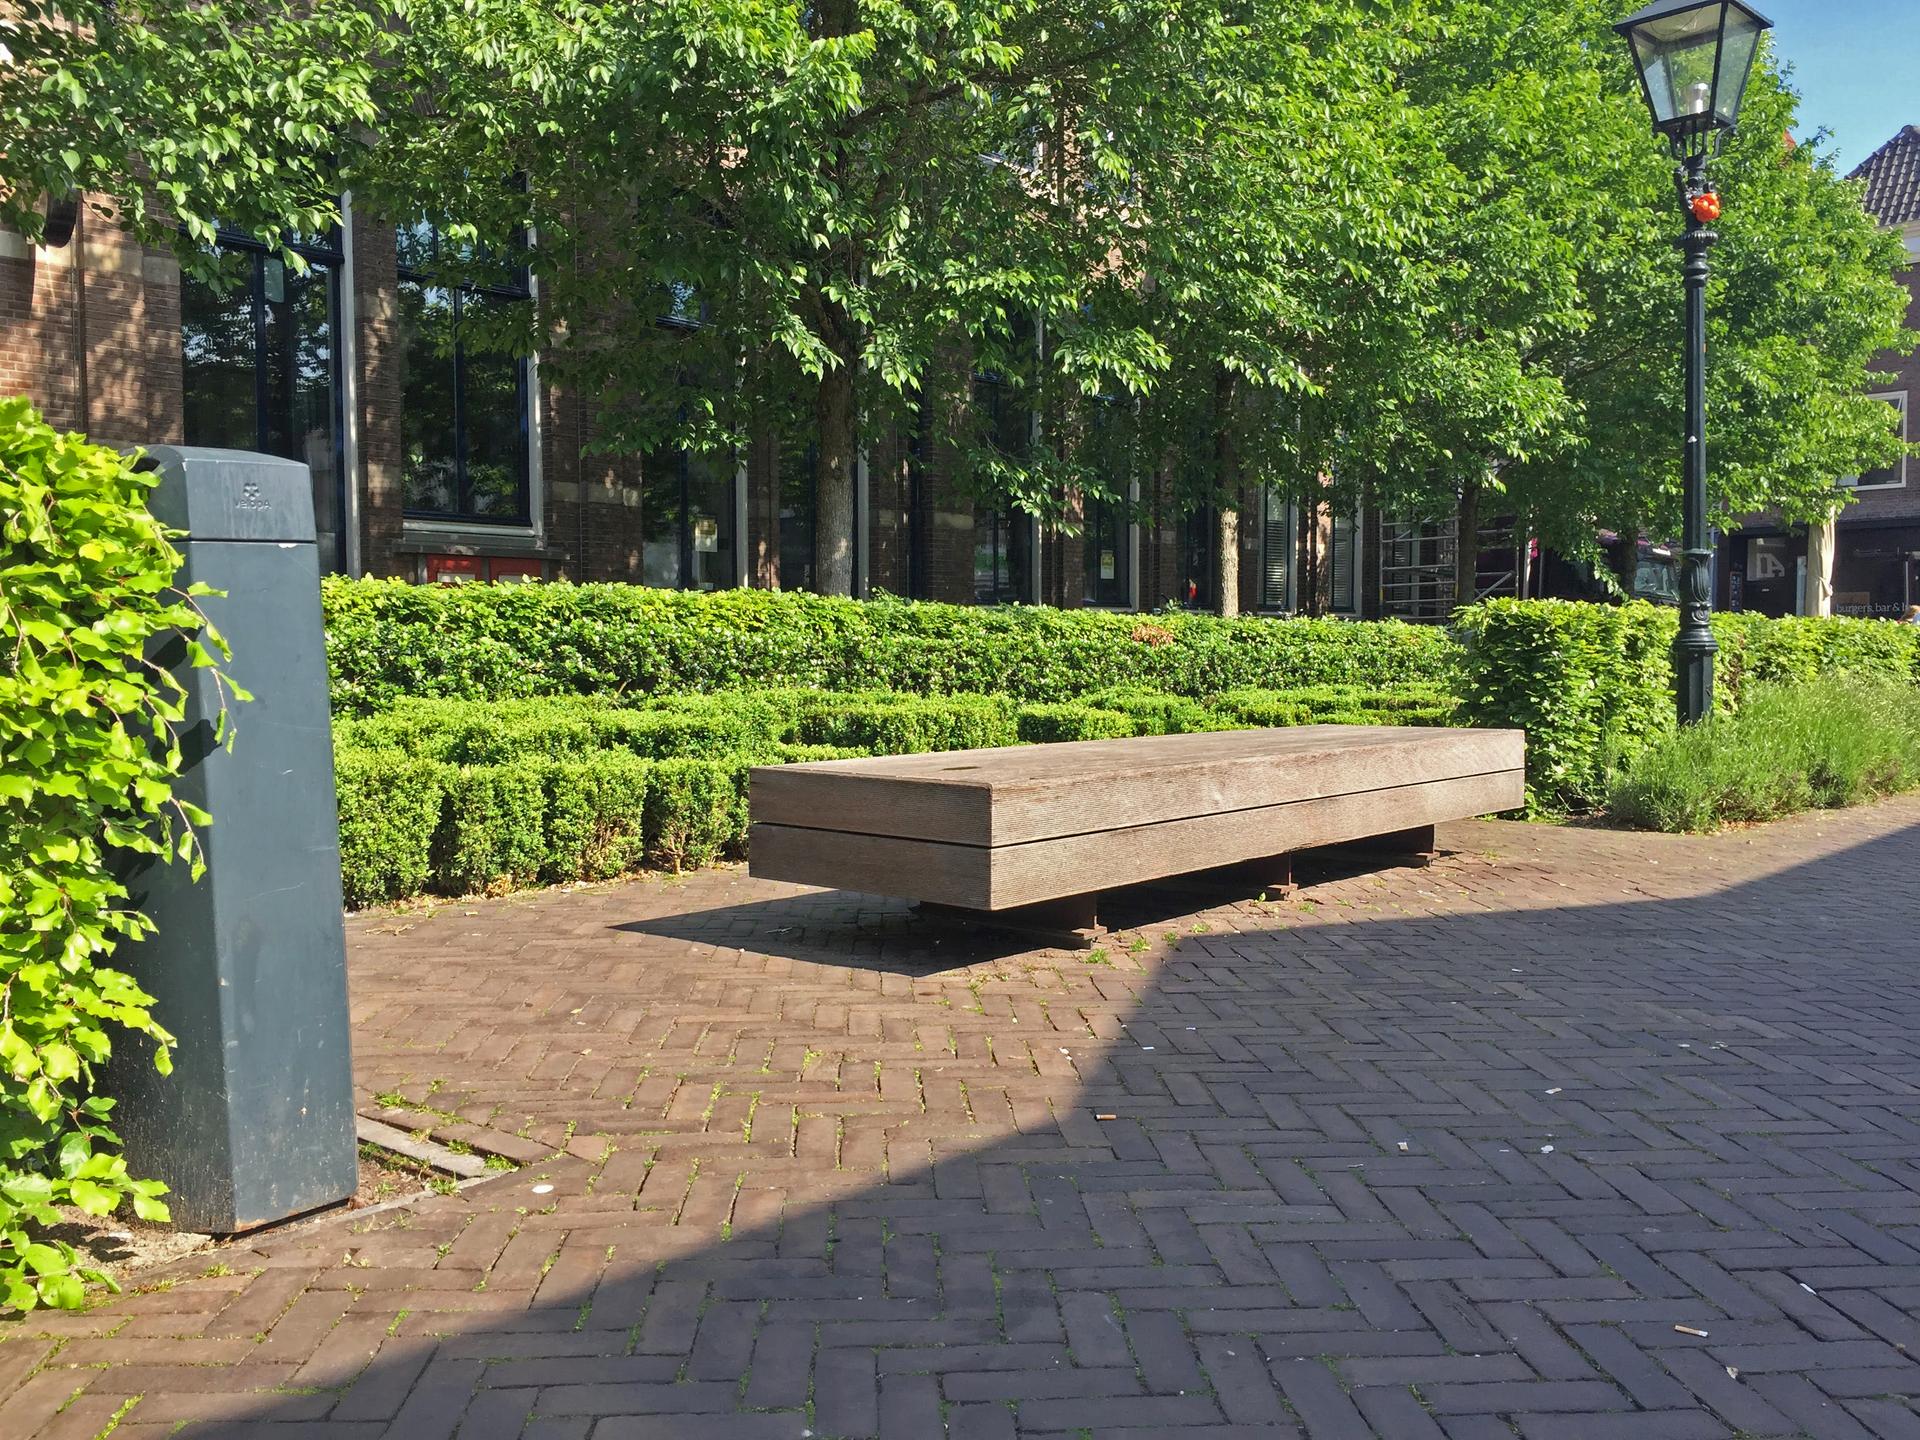 De foto toont een zitbank zonder leuningen op het plein de Nieuwe Markt in Zwolle. De bank is omgeven door heggen en verlichting..